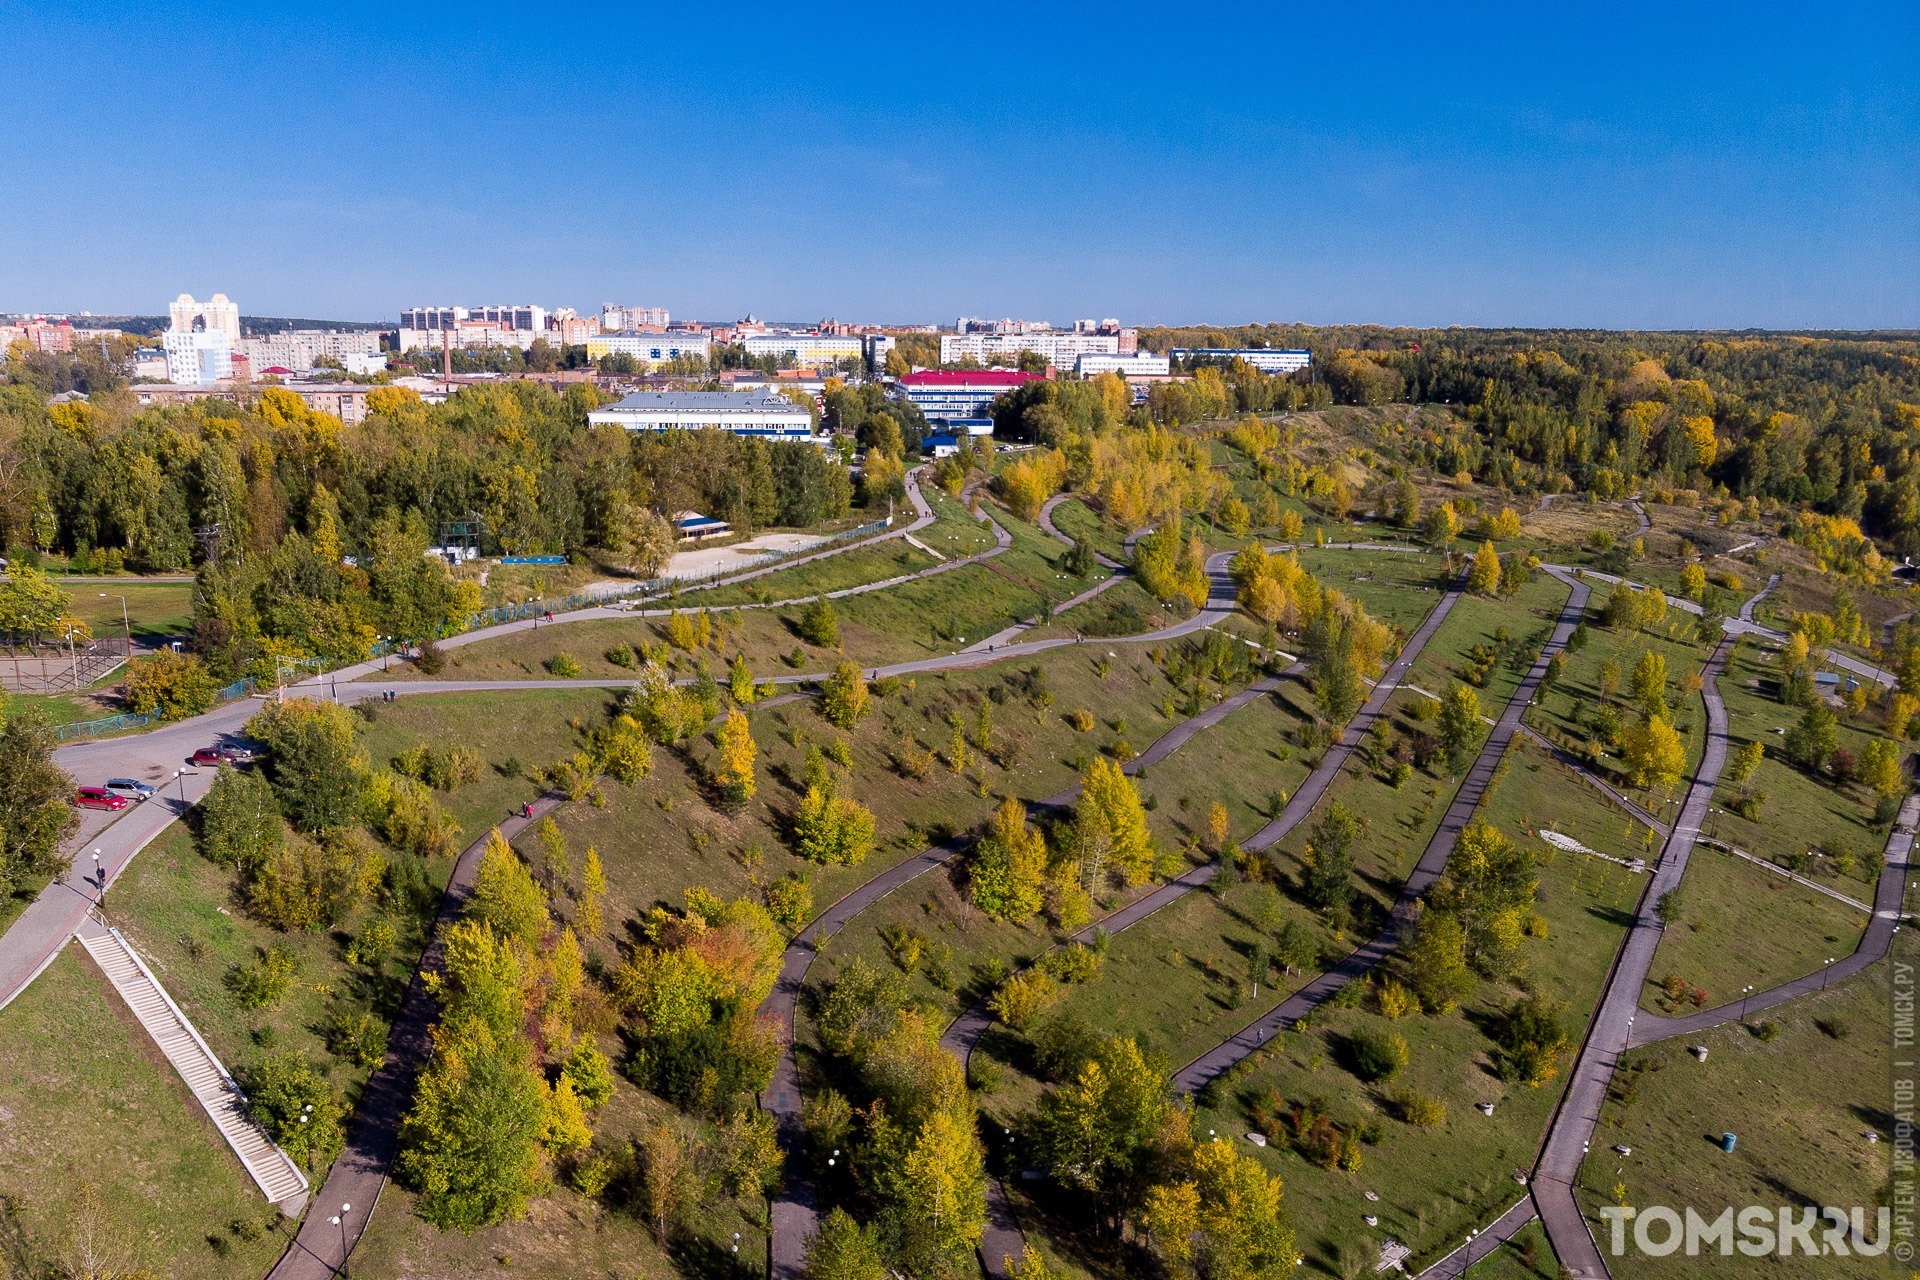 Лагерный сад вошел в топ-1000 самых популярных достопримечательностей России